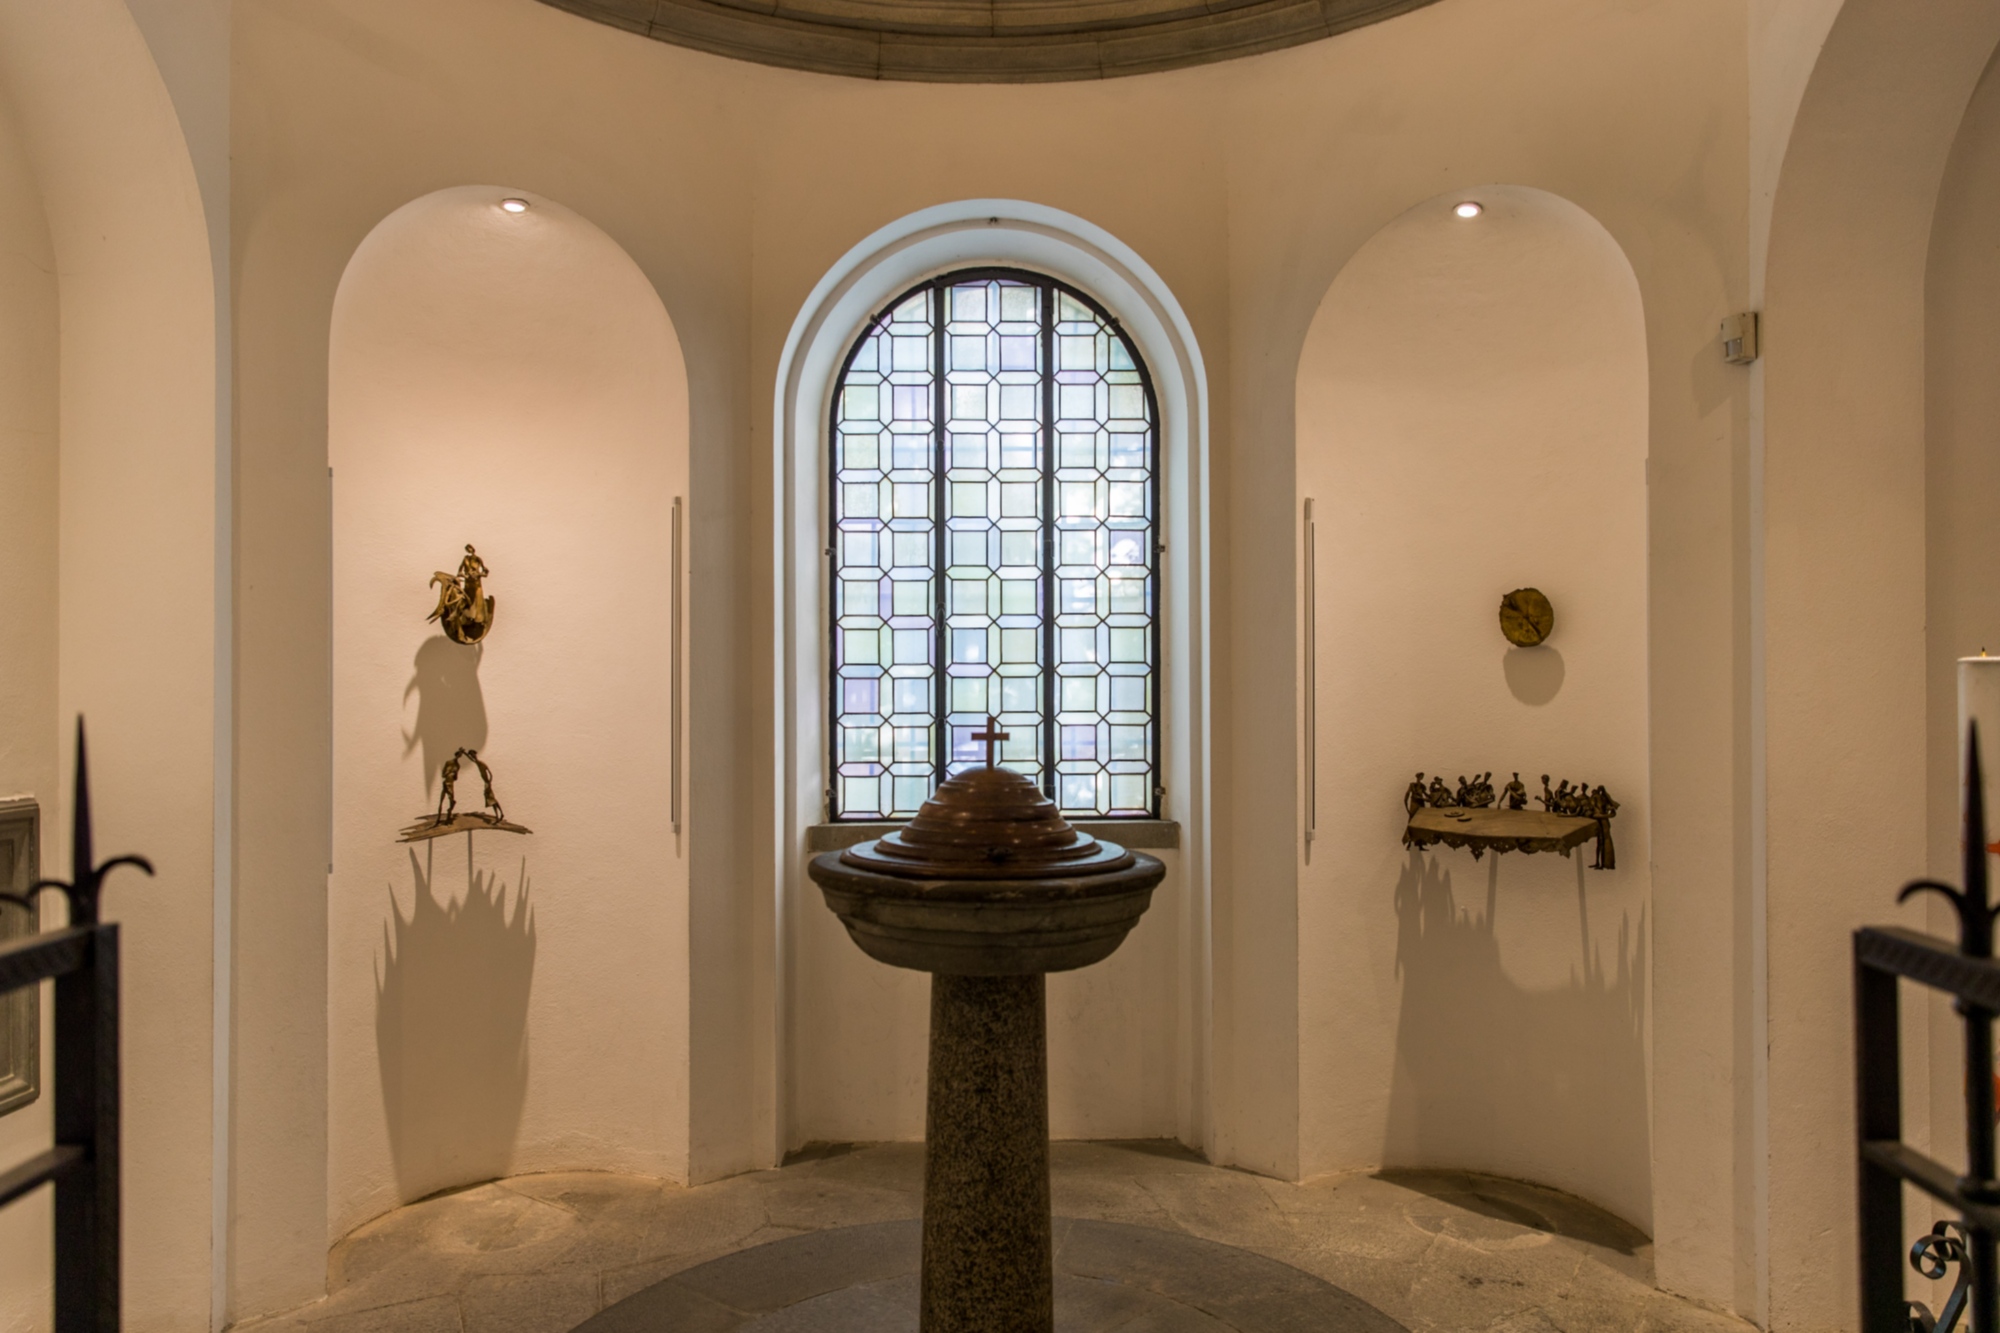 Les fonts baptismaux dans lesquels Léonard a été baptisé et le cycle de sculptures de Cecco Bonanotte